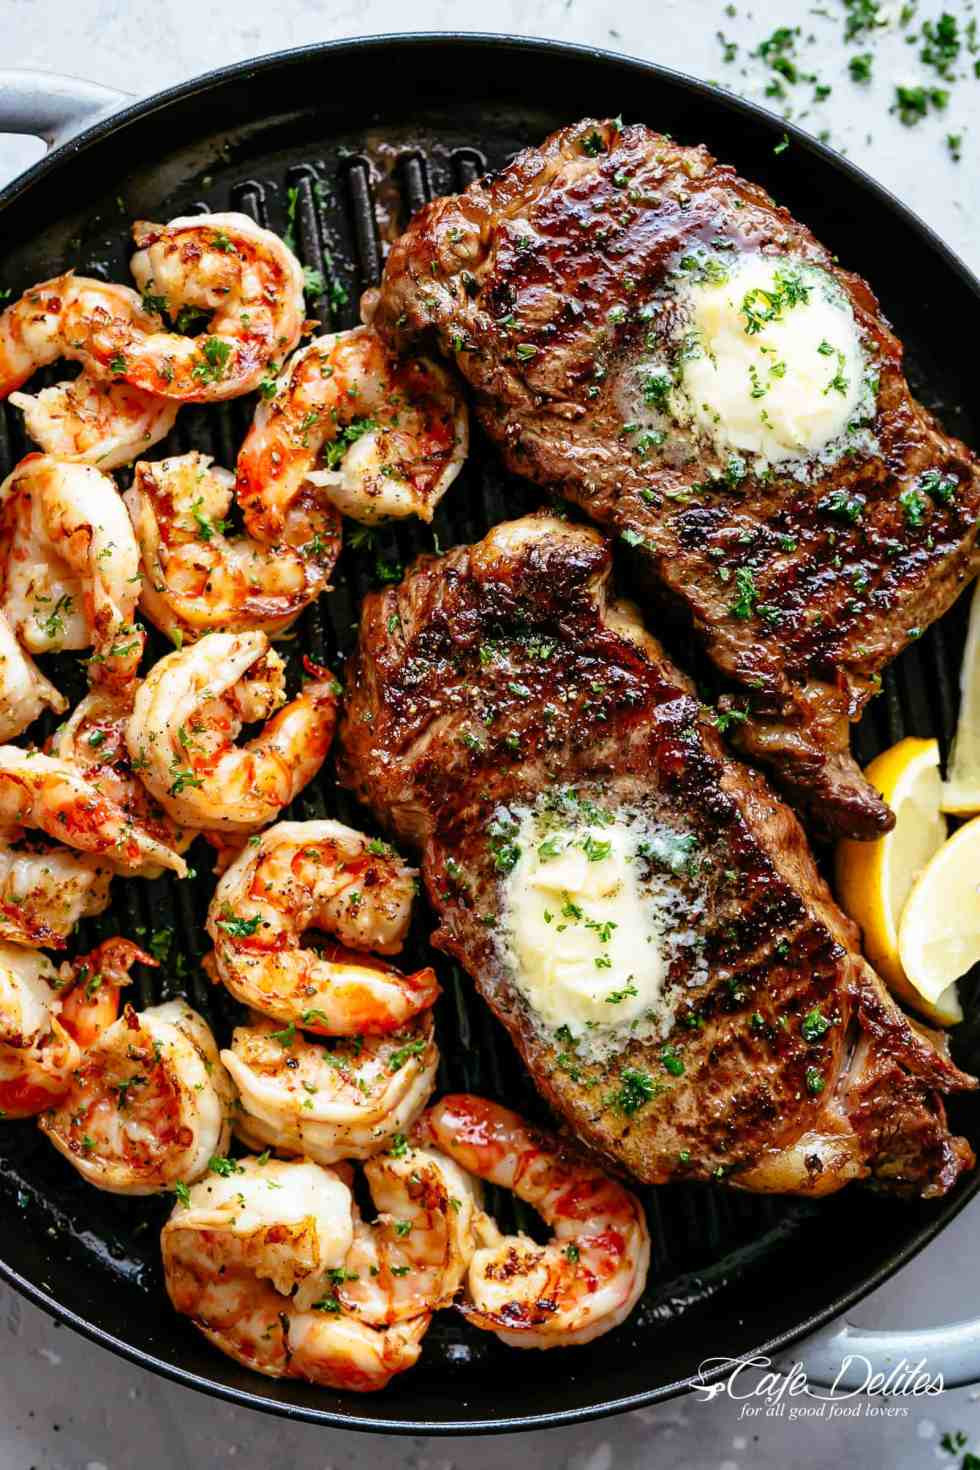 Grill Ideas For Dinner
 Garlic Butter Grilled Steak & Shrimp Cafe Delites